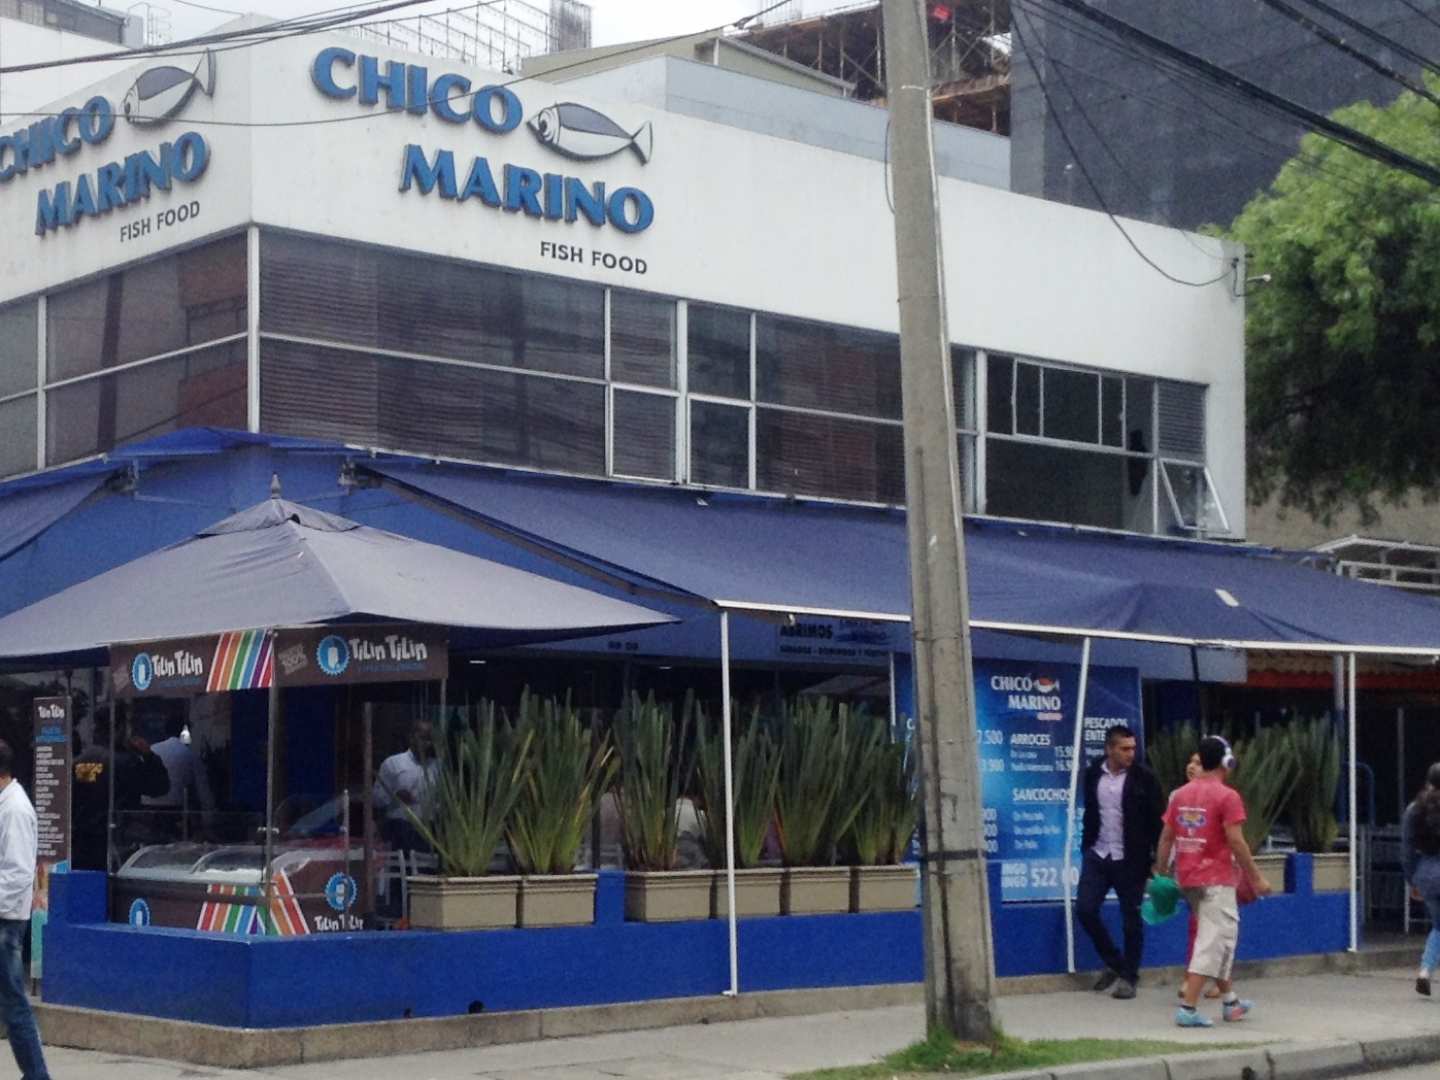 Chico Marino